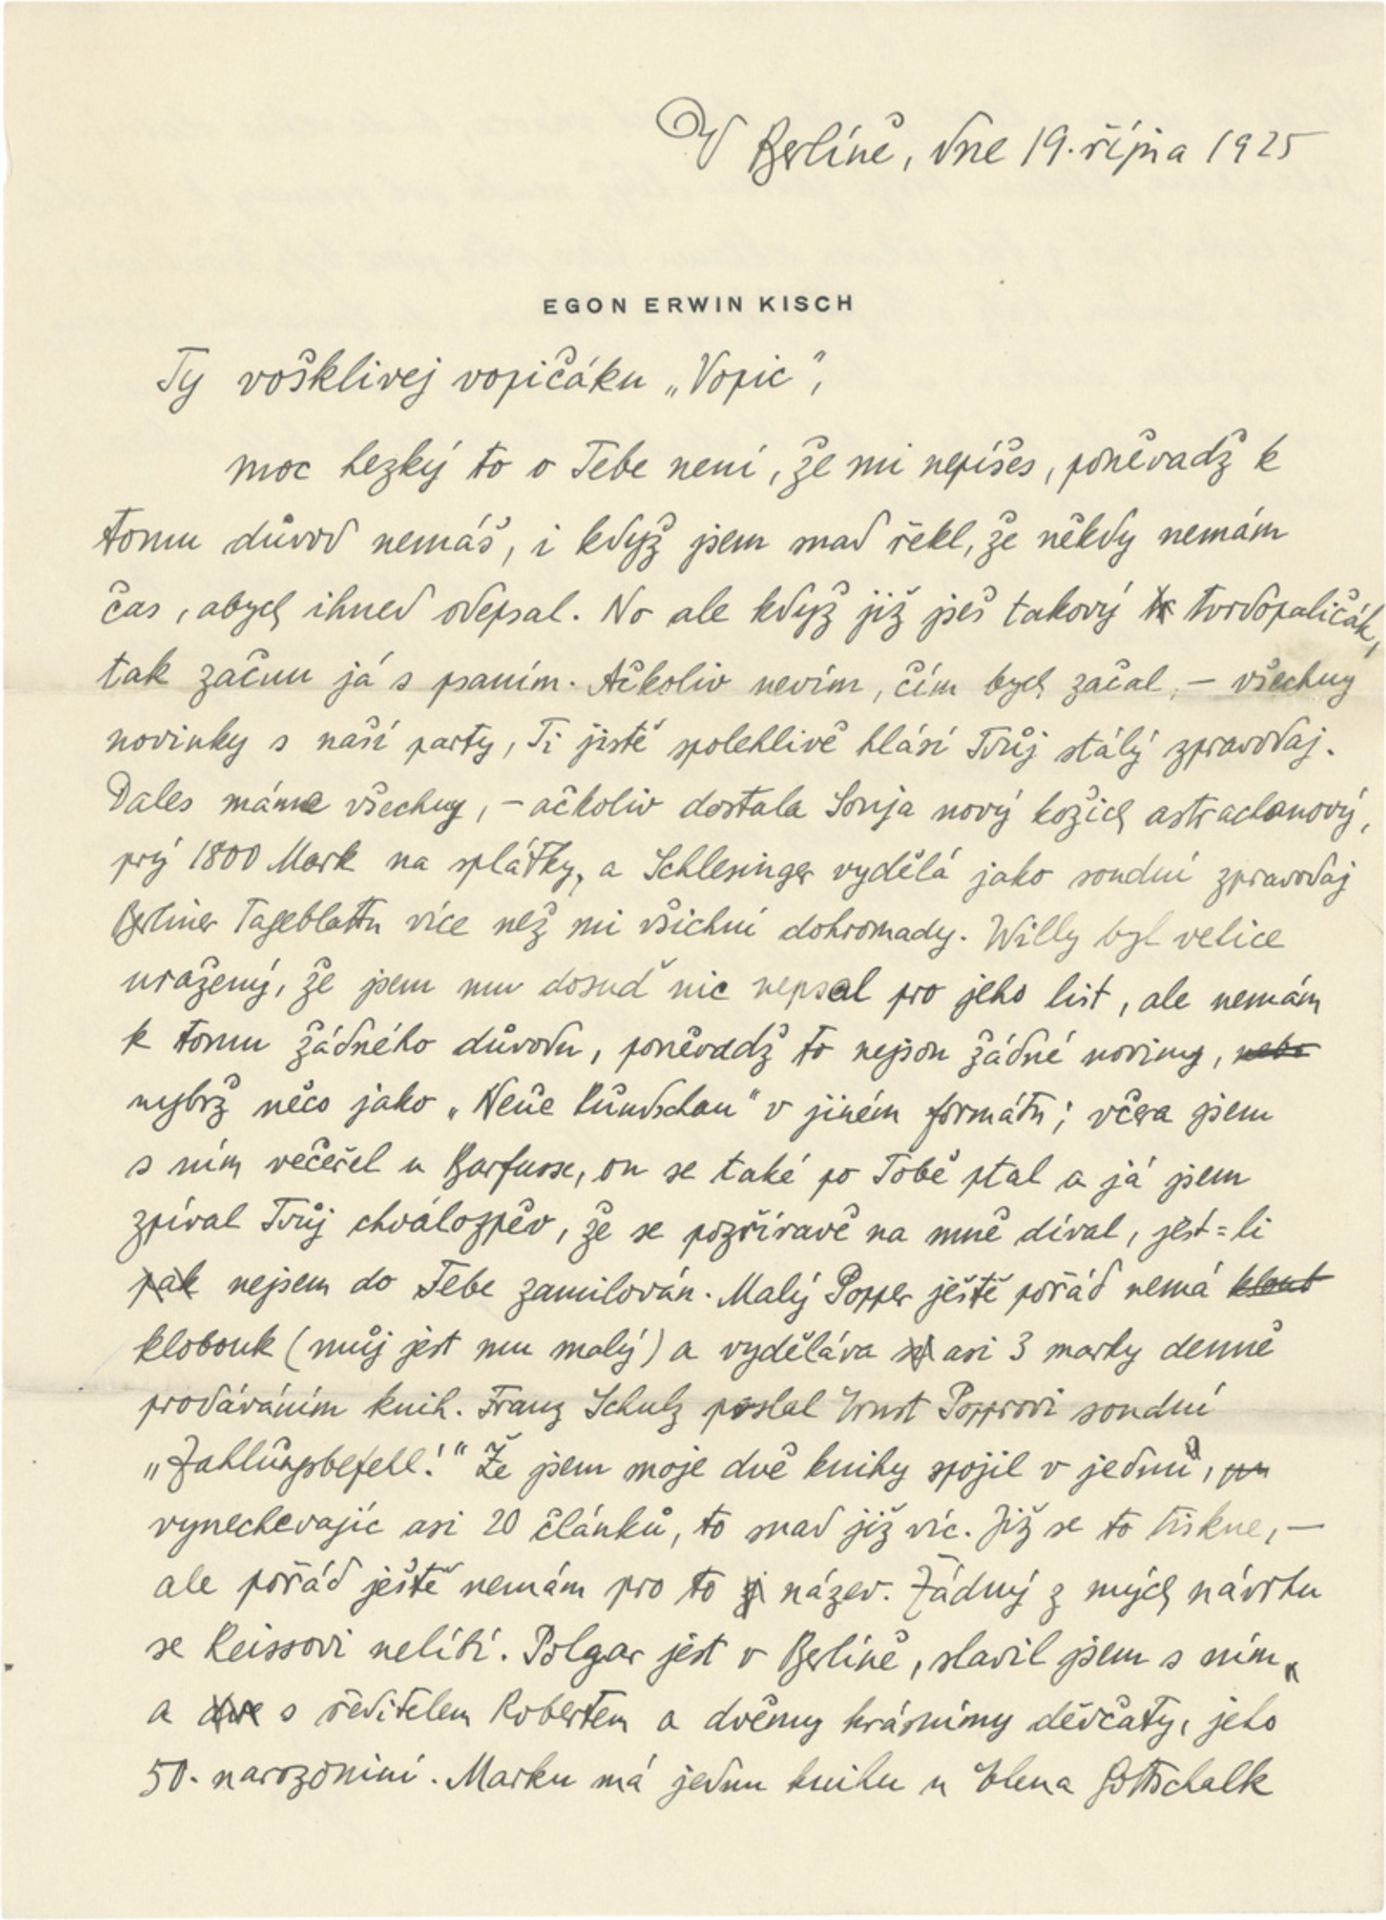 Kisch, Egon Erwin: Eigenhändiger Brief. Berlin, 19. Oktober 1925.